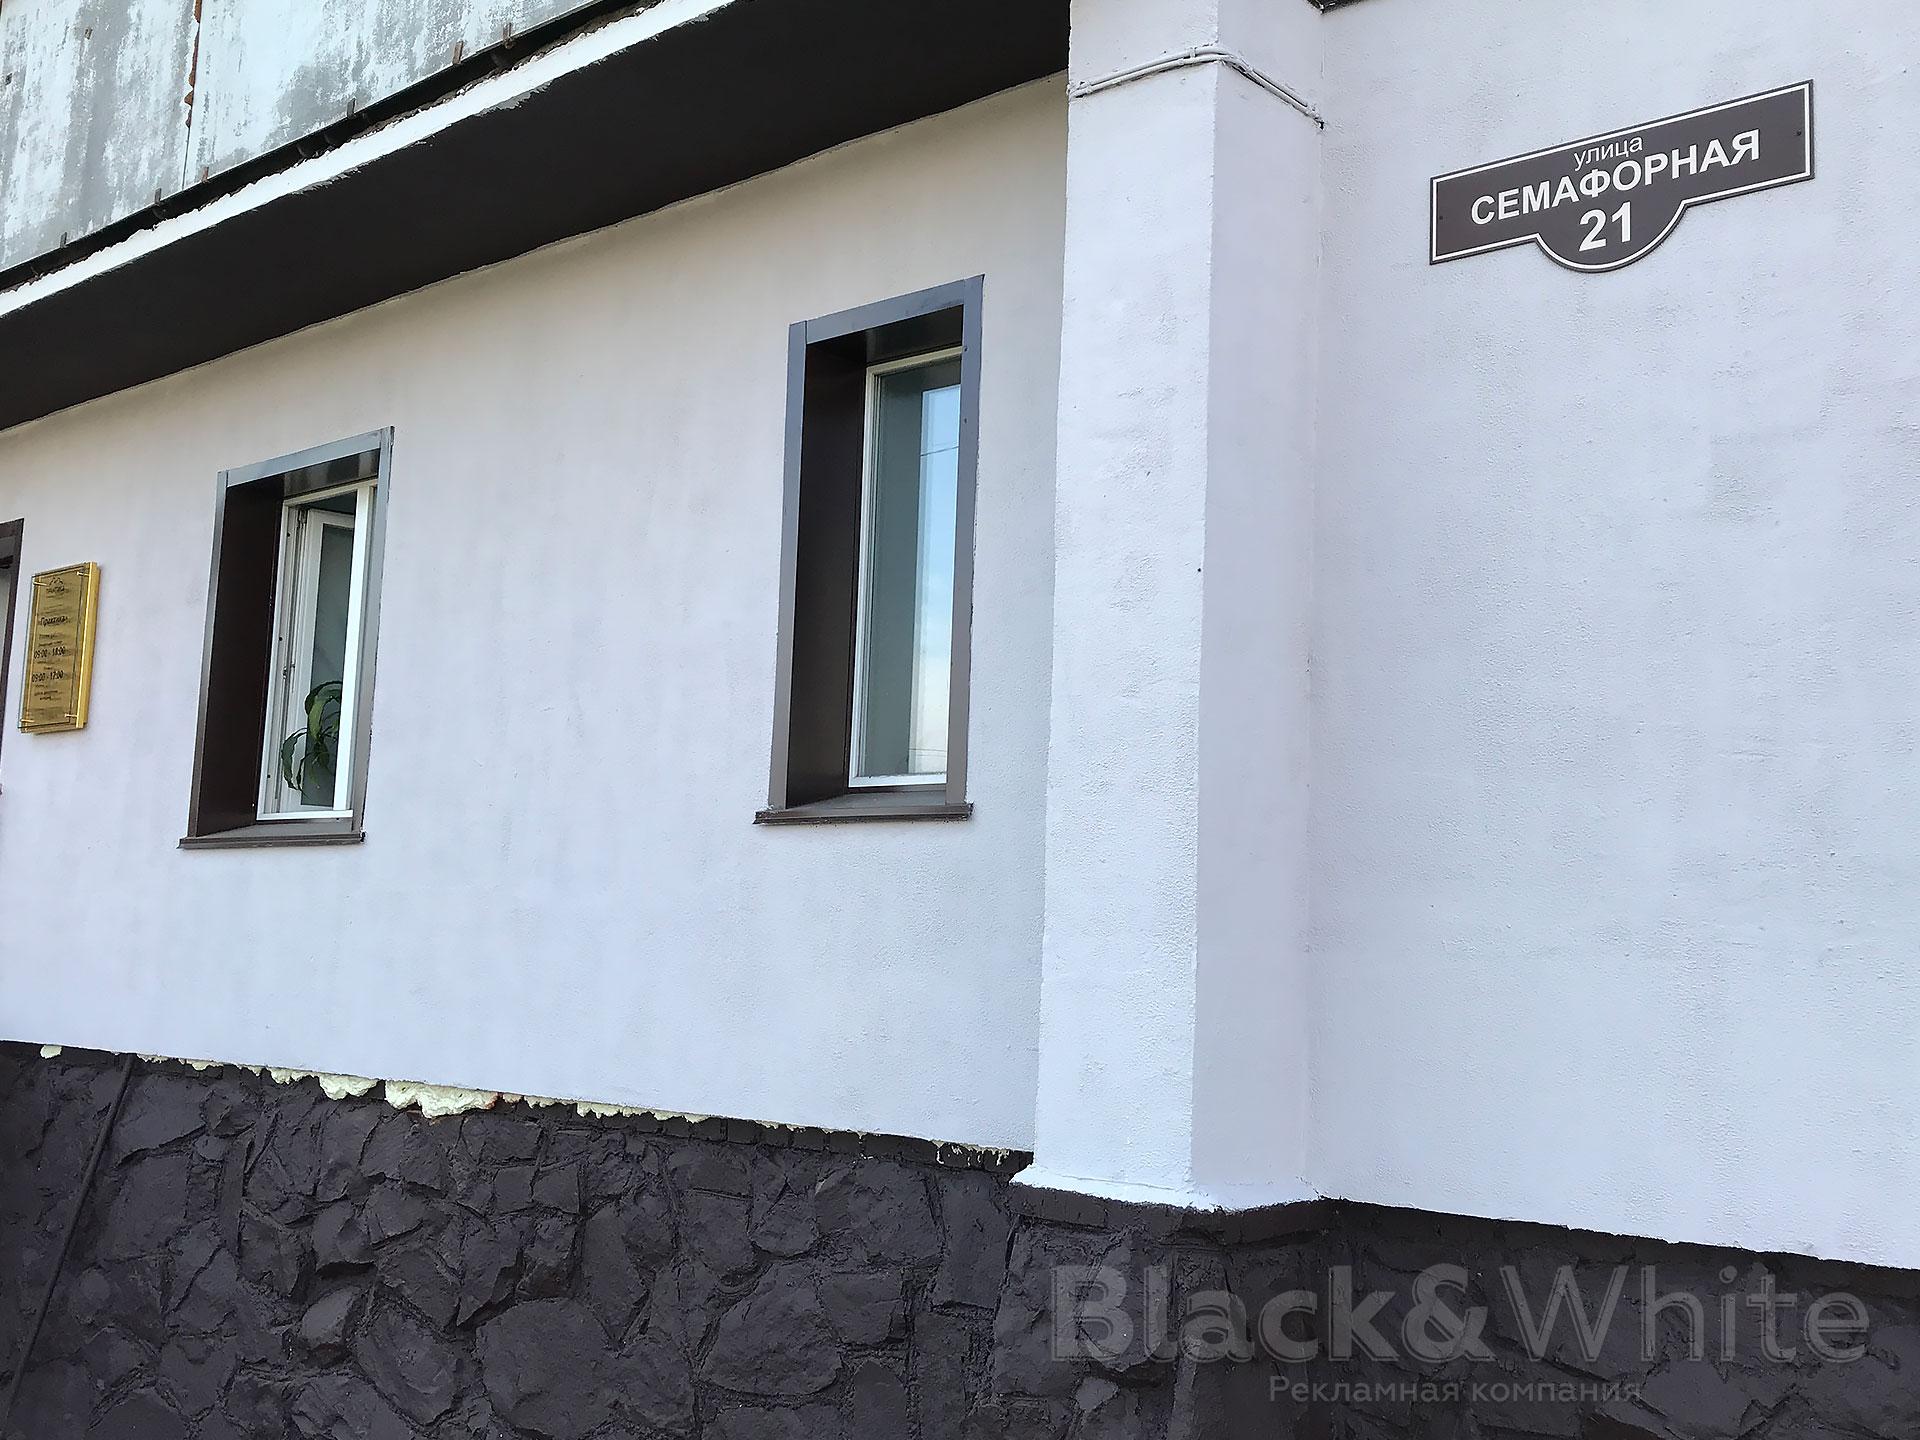 Адресные-таблички-домовые-знаки-красноярск-Black&White.jpg